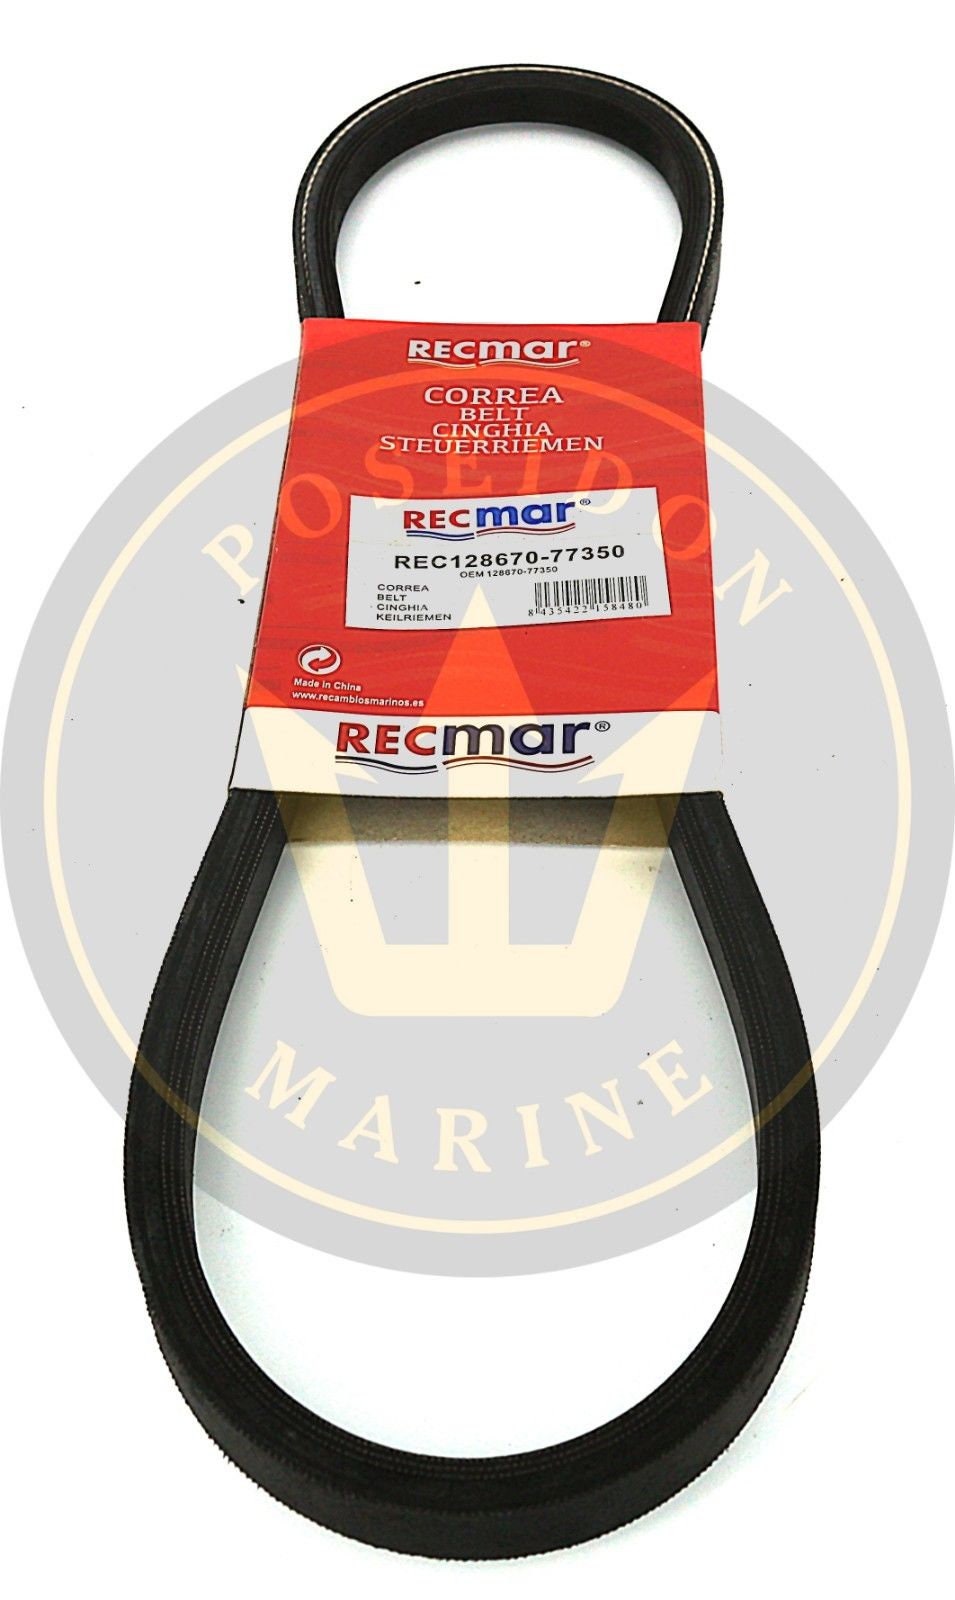 RECMAR Alternator Belt for Yanmar 3YM20 RO: 129612-42290 並行輸入品 カヌー、ボート備品